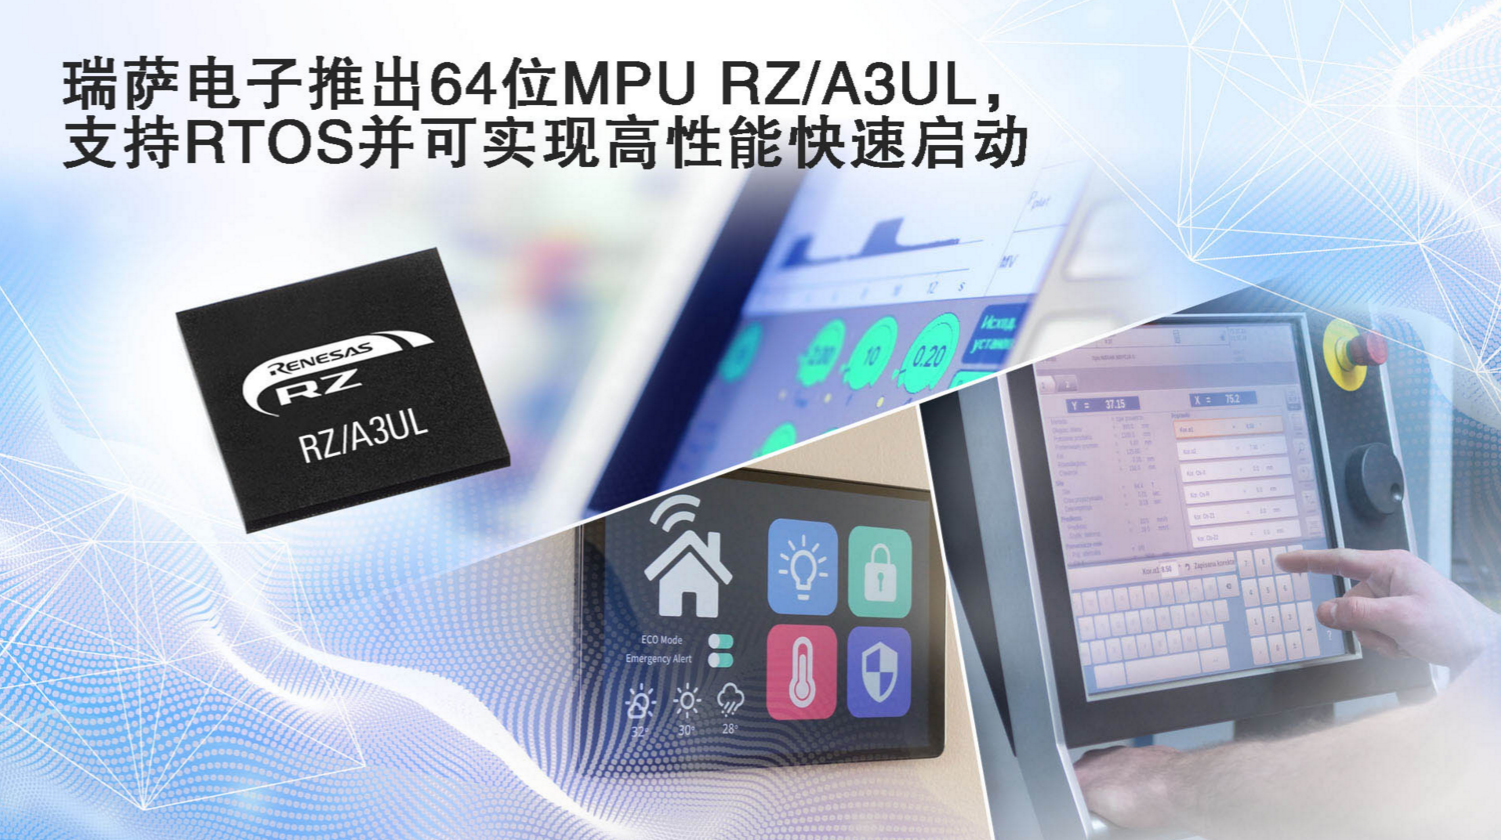 瑞薩電子推出功能強大的RZ/A3UL MPU，支持RTOS并可實現高清HMI和快速啟動